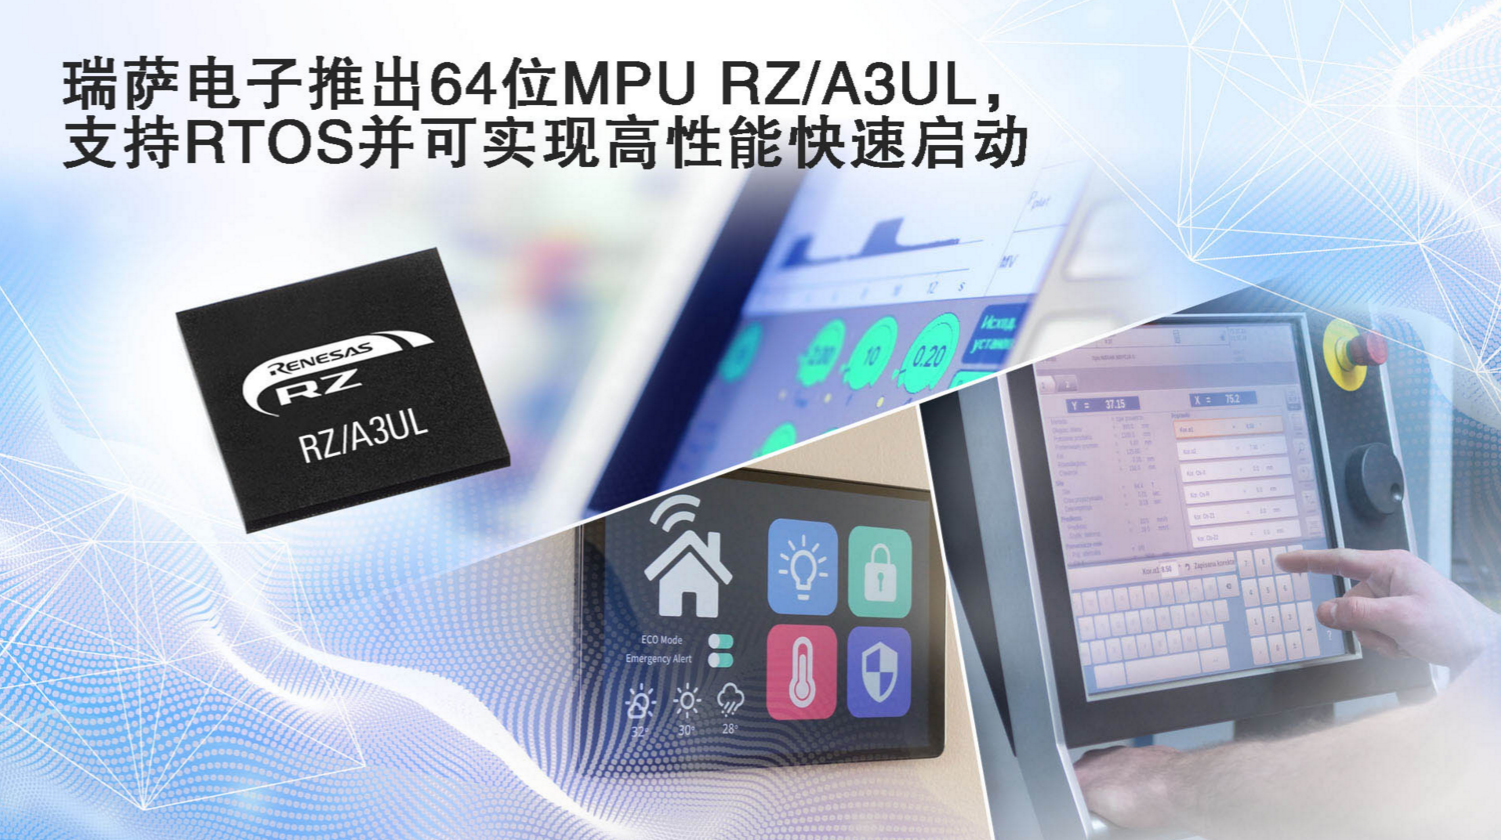 瑞薩電子推出功能強大的RZ/A3UL MPU，支持RTOS并可實現高清HMI和快速啟動